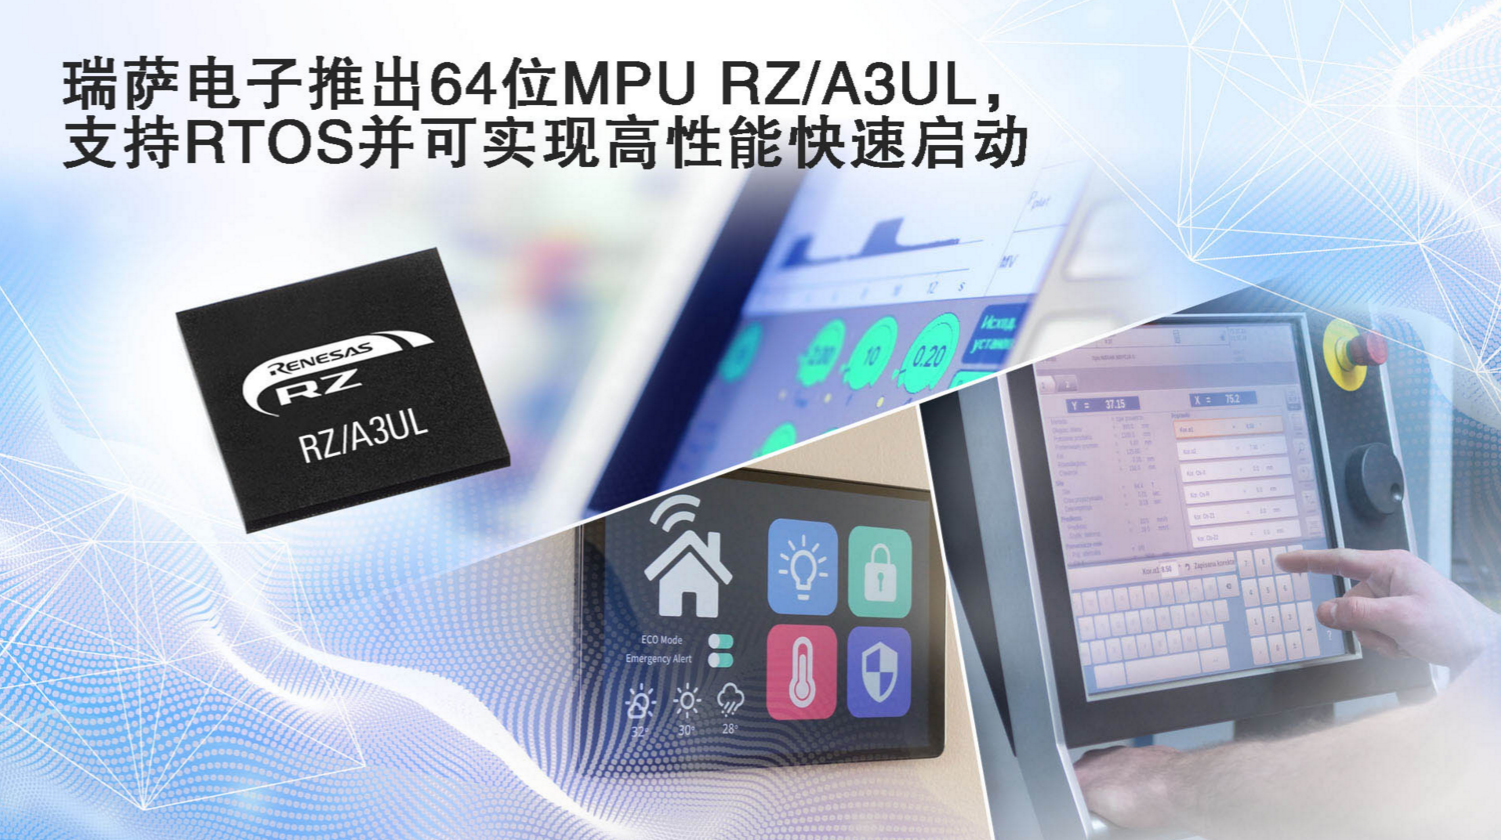 瑞薩電子推出功能強大的RZ/A3UL MPU，支持RTOS并可實現高清HMI和快速啟動